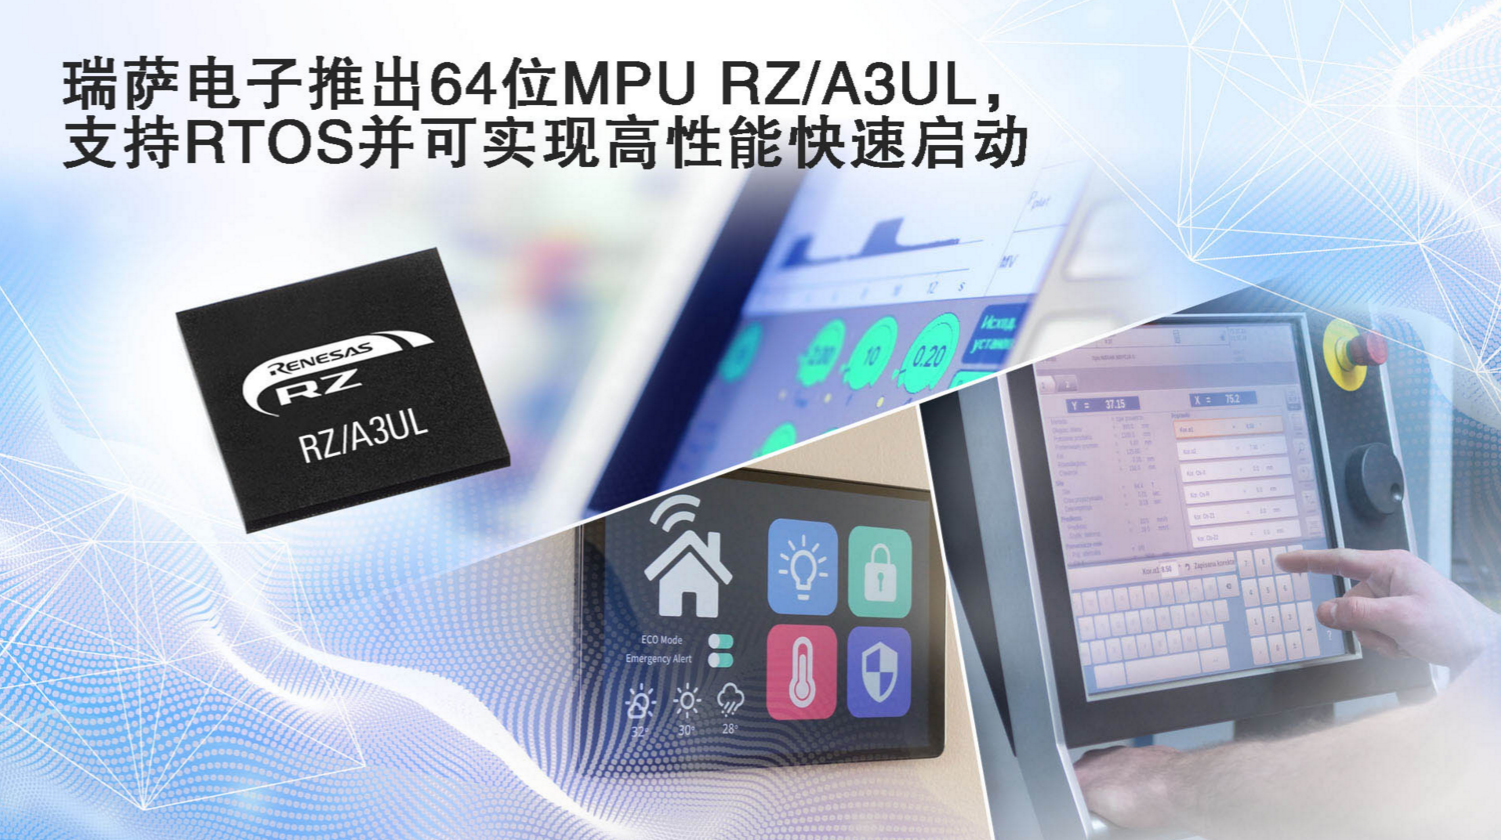 瑞薩電子推出功能強大的RZ/A3UL MPU，支持RTOS并可實現高清HMI和快速啟動